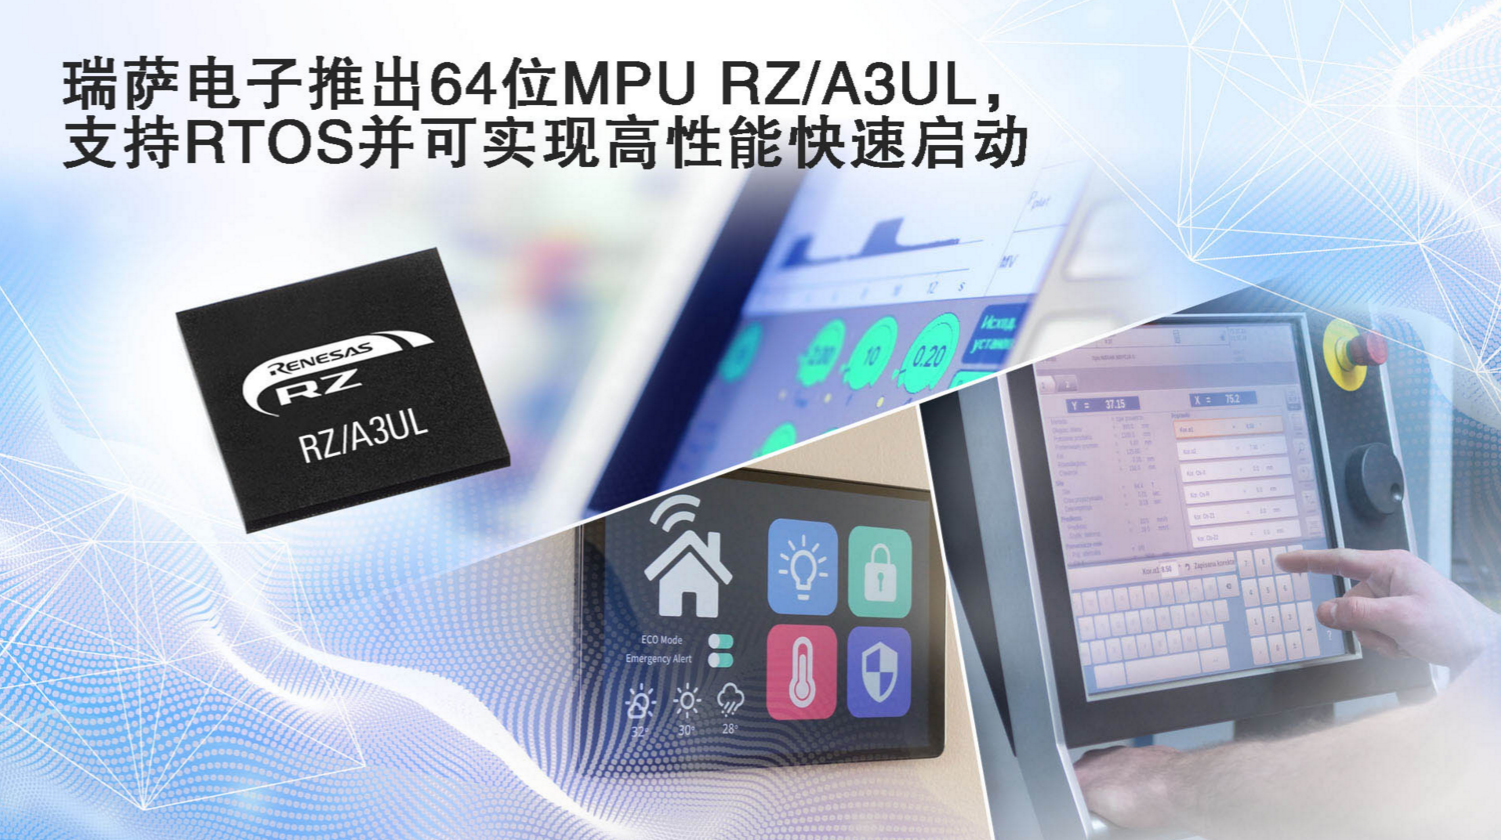 瑞薩電子推出功能強大的RZ/A3UL MPU，支持RTOS并可實現高清HMI和快速啟動